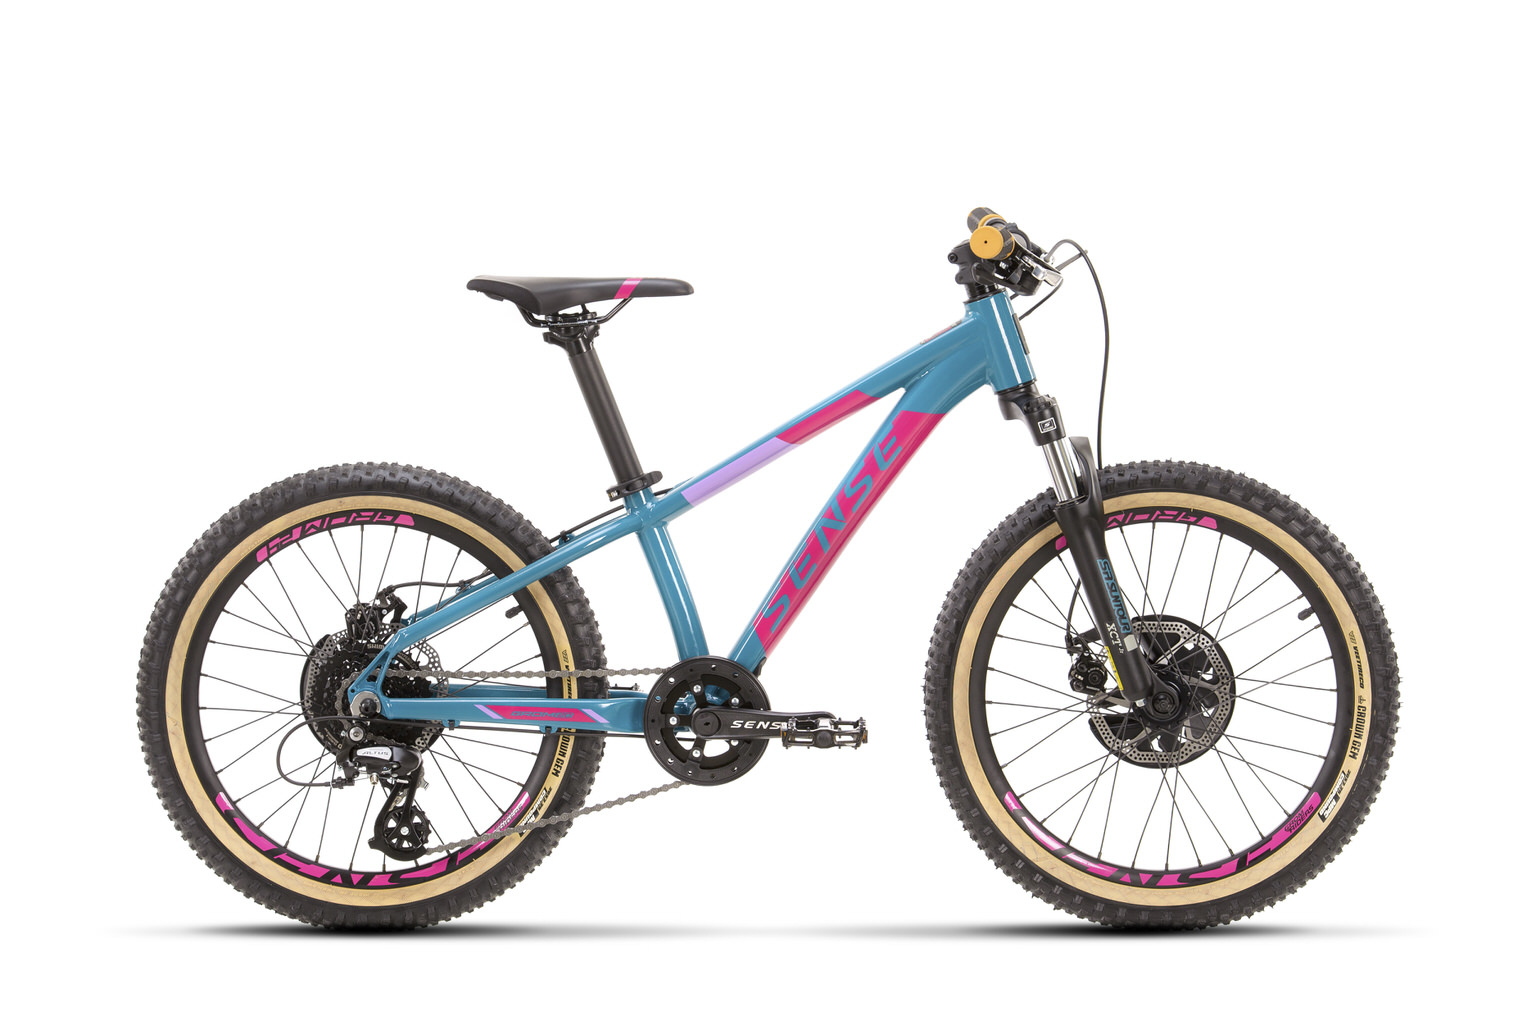 Bicicleta Sense  Aro 20 Grom 8v  Aqua/Rosa 2021/22